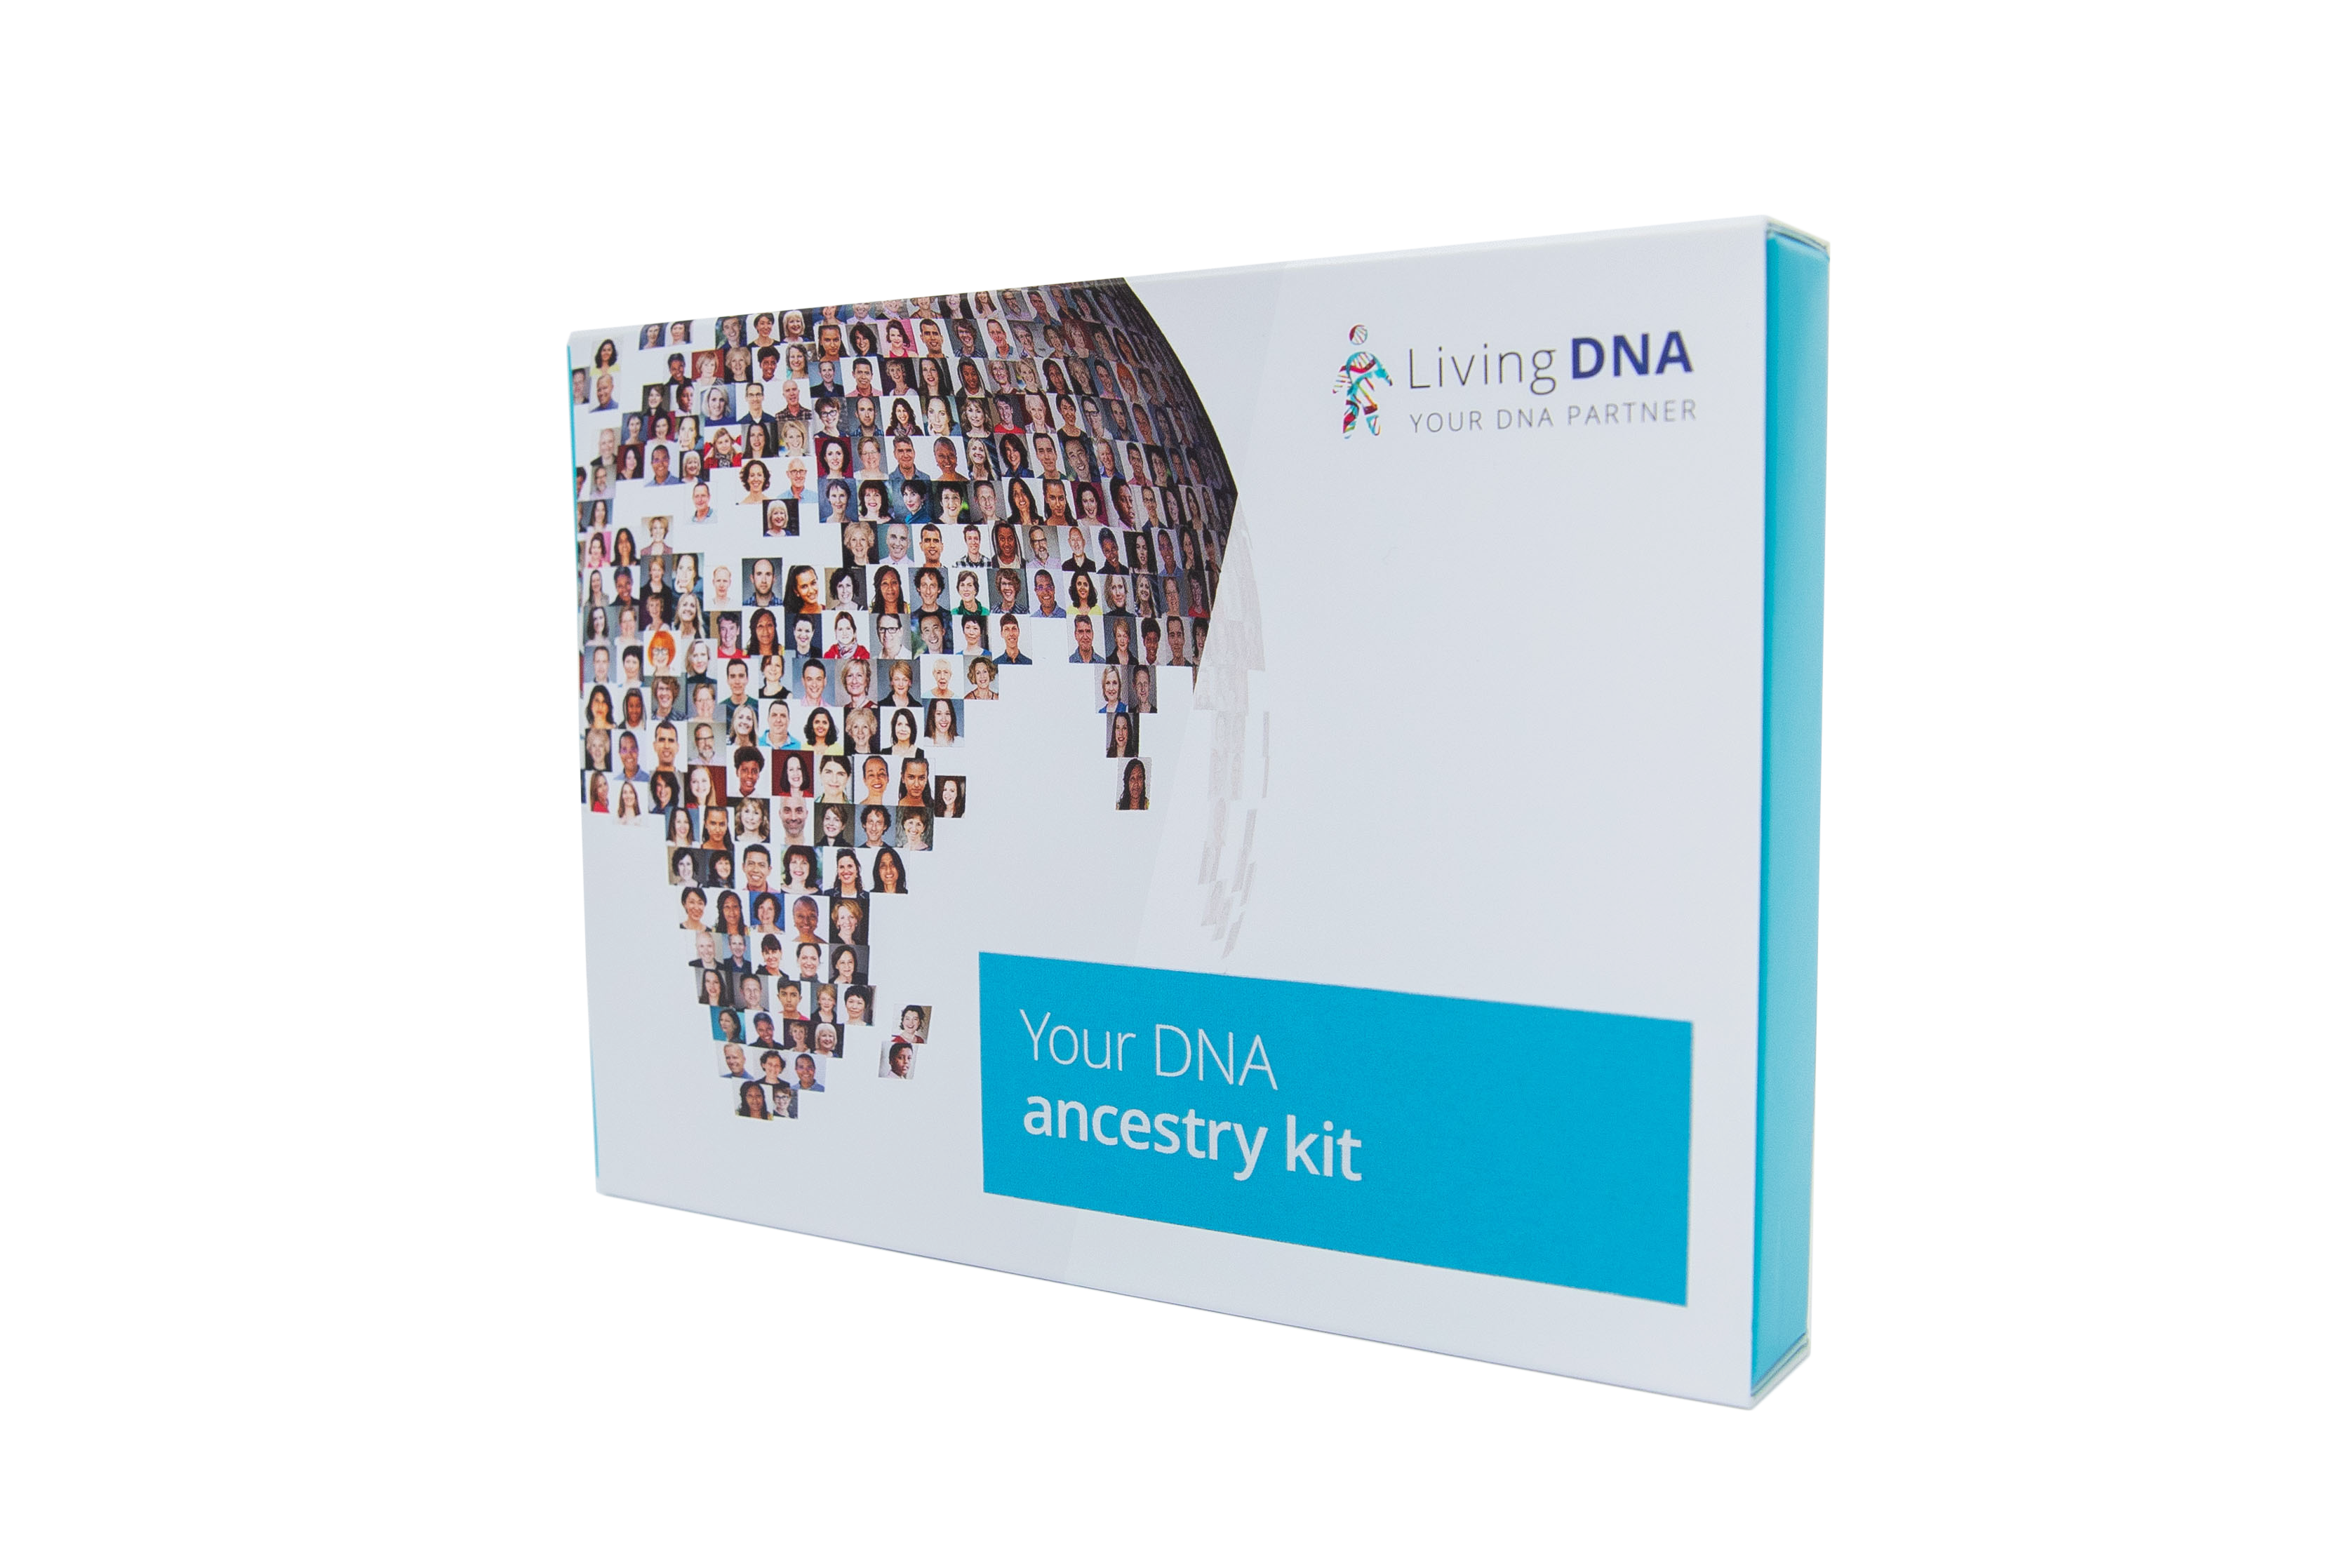 Full ancestry kit